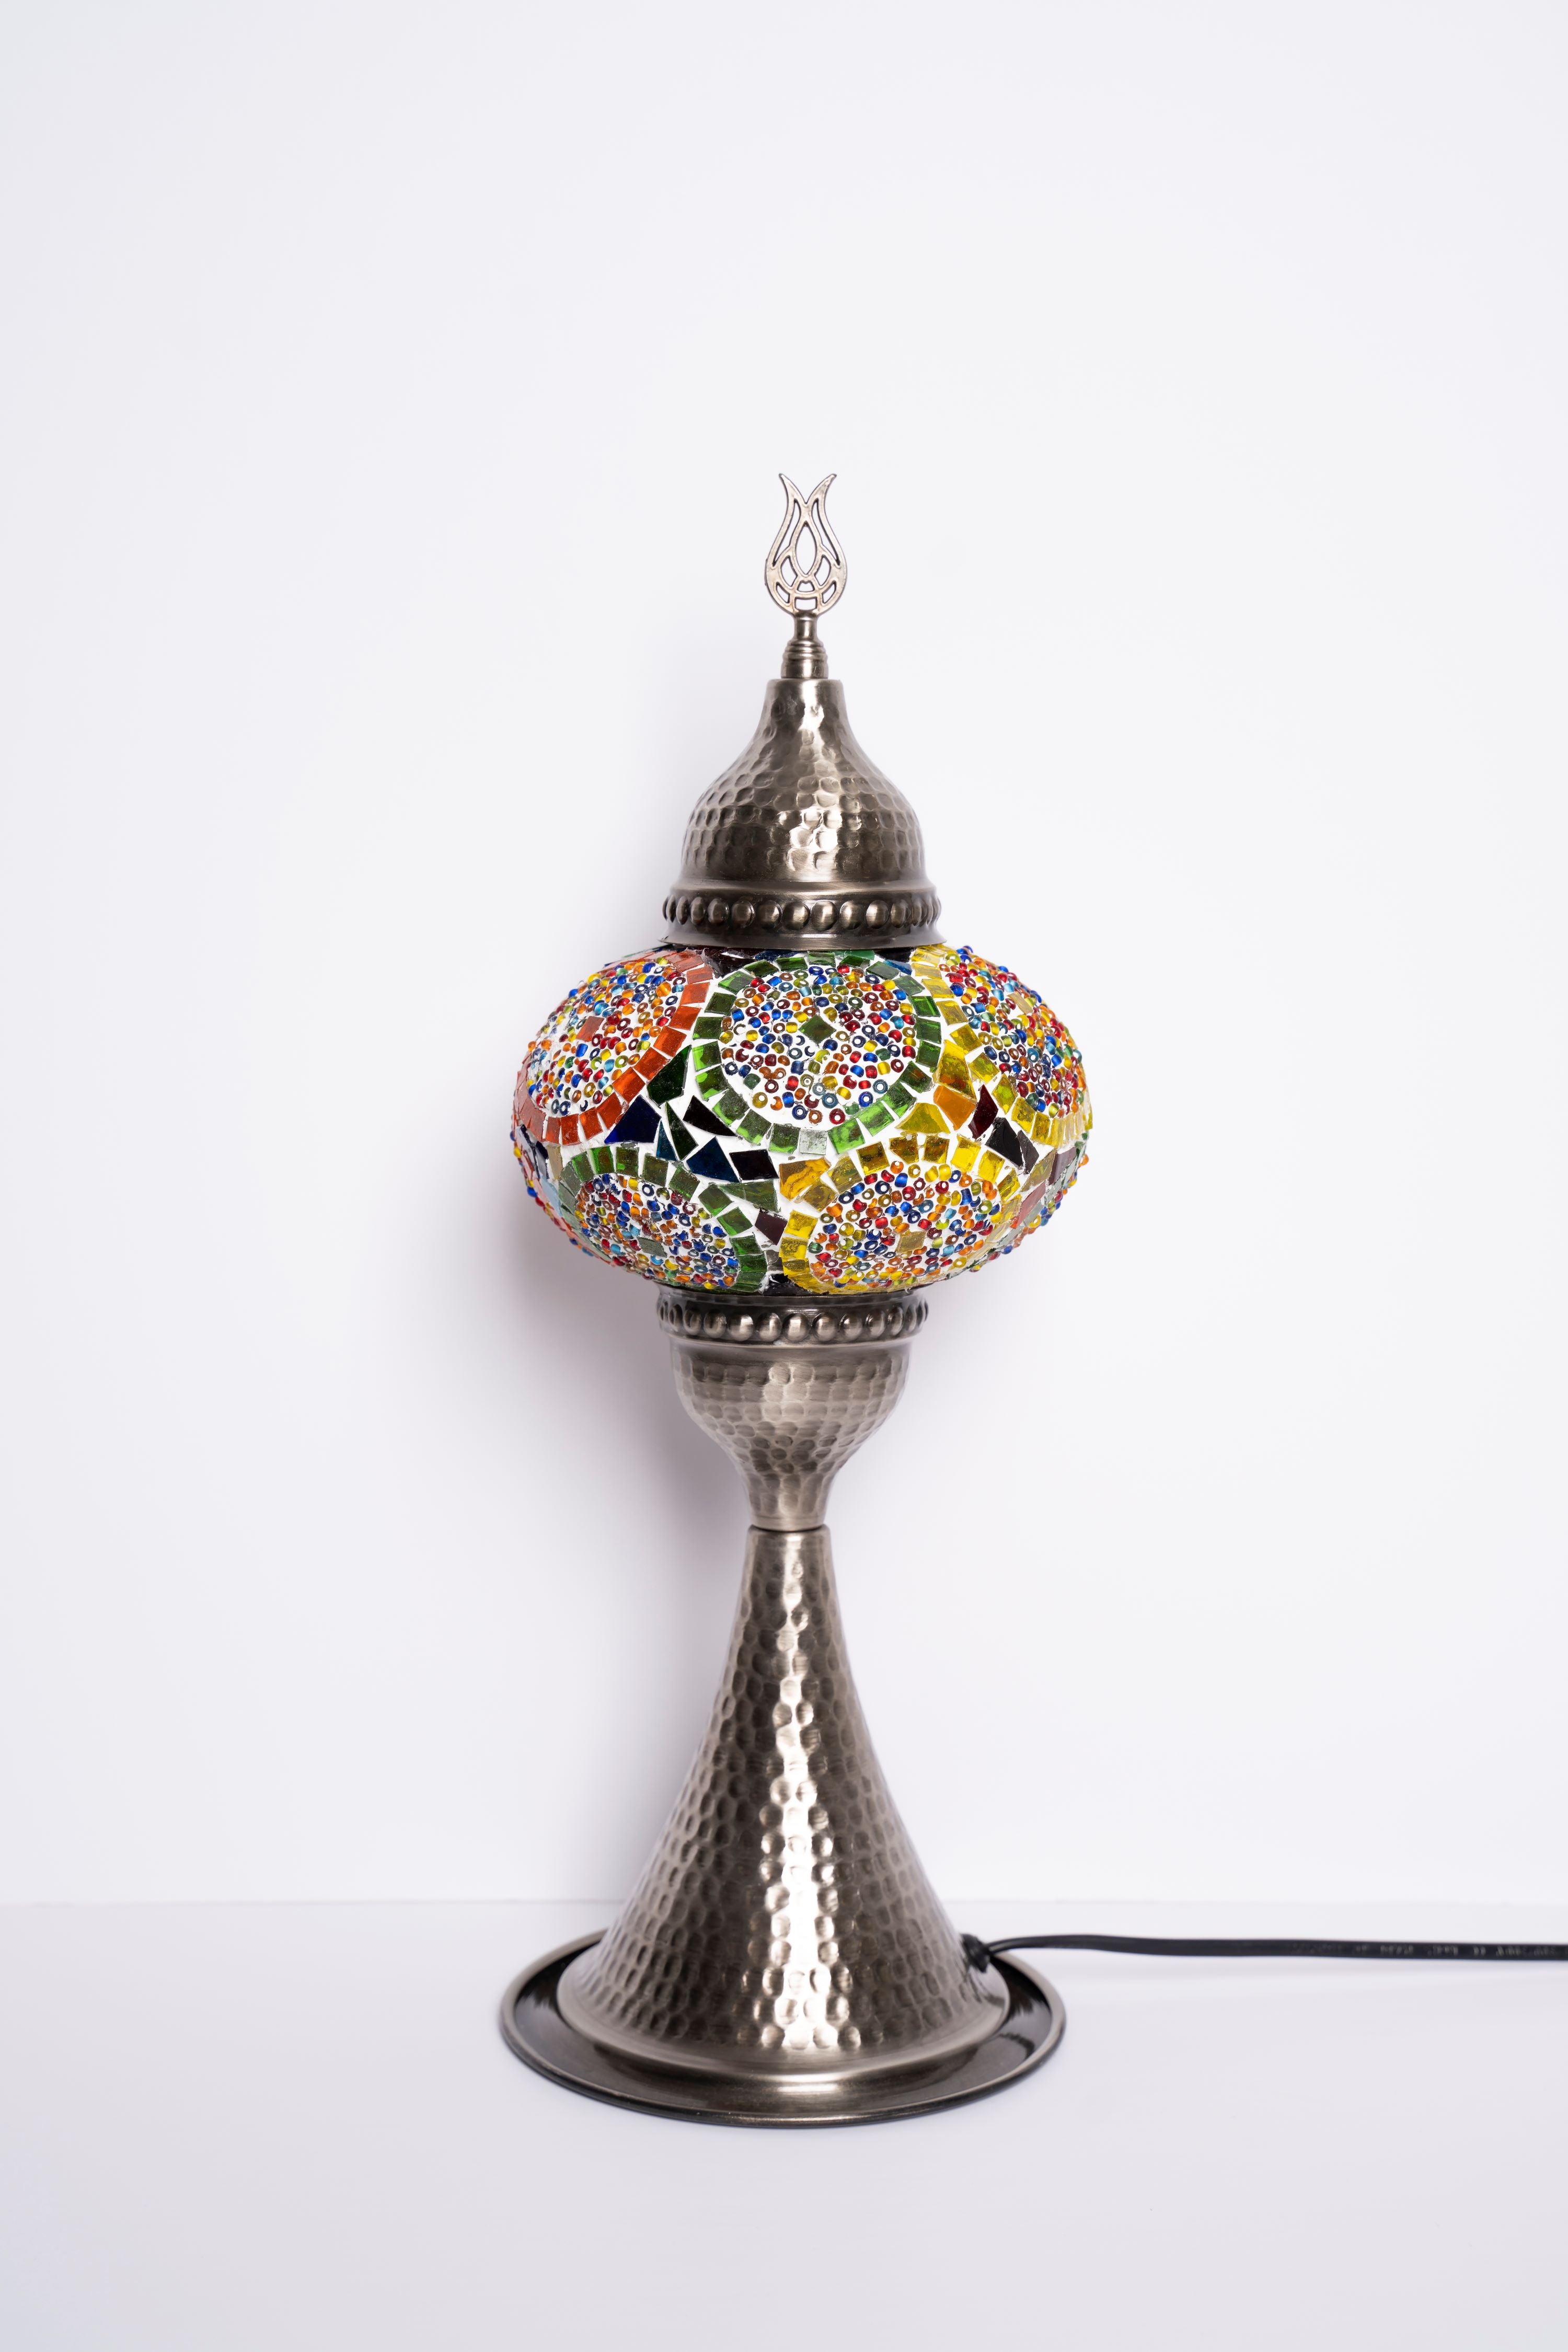 Elite Turkish Mosaic Lamps